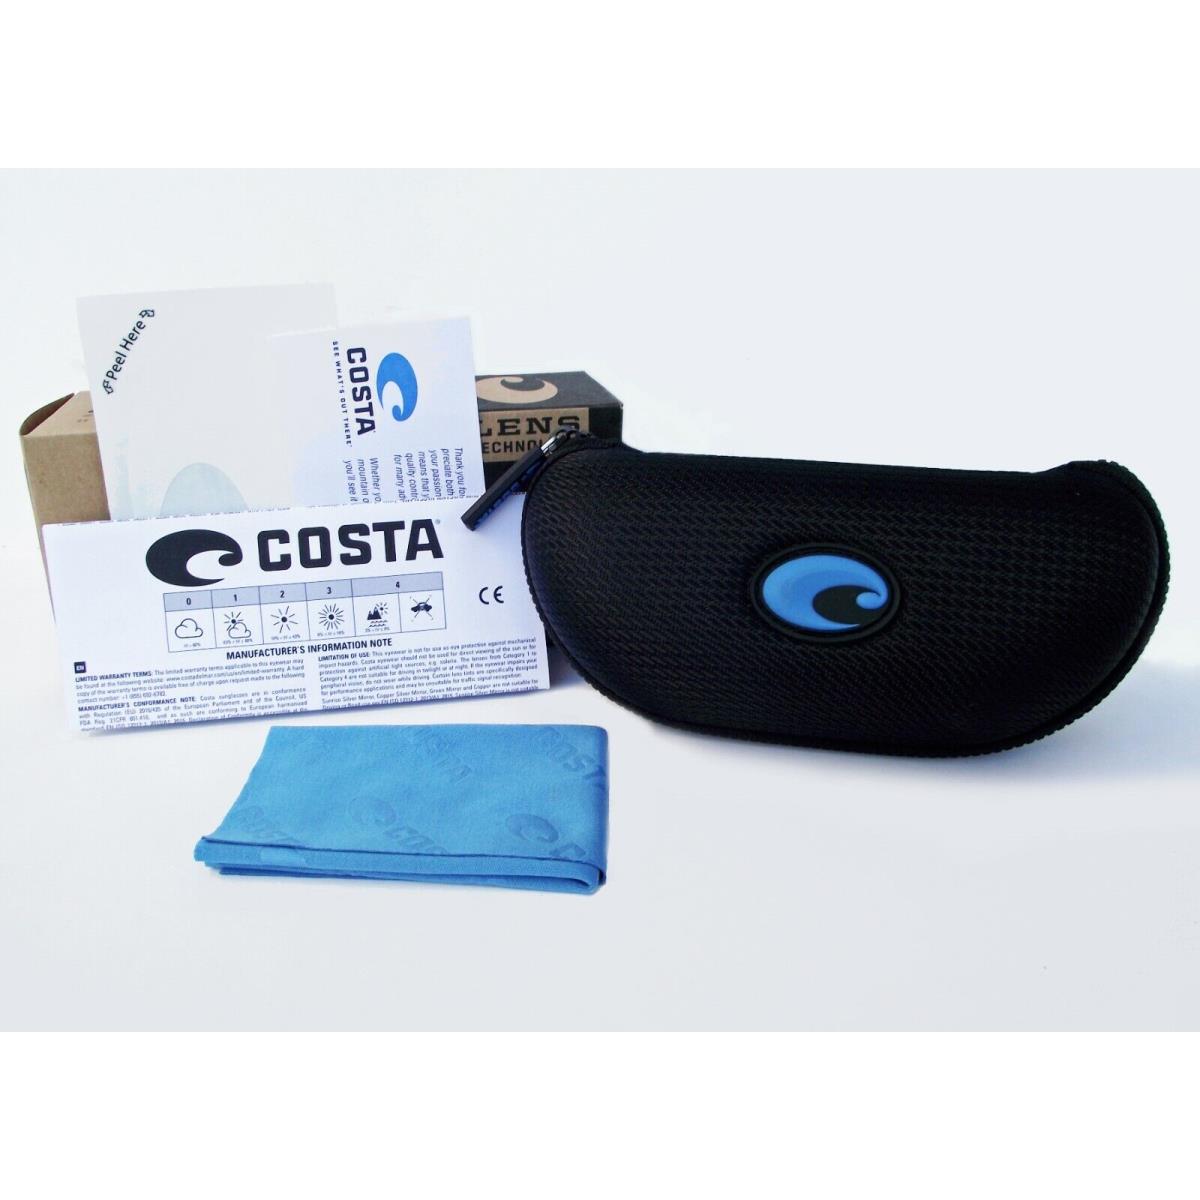 Costa Del Mar sunglasses Fantail Pro - Black Frame, Gray Silver Lens 3